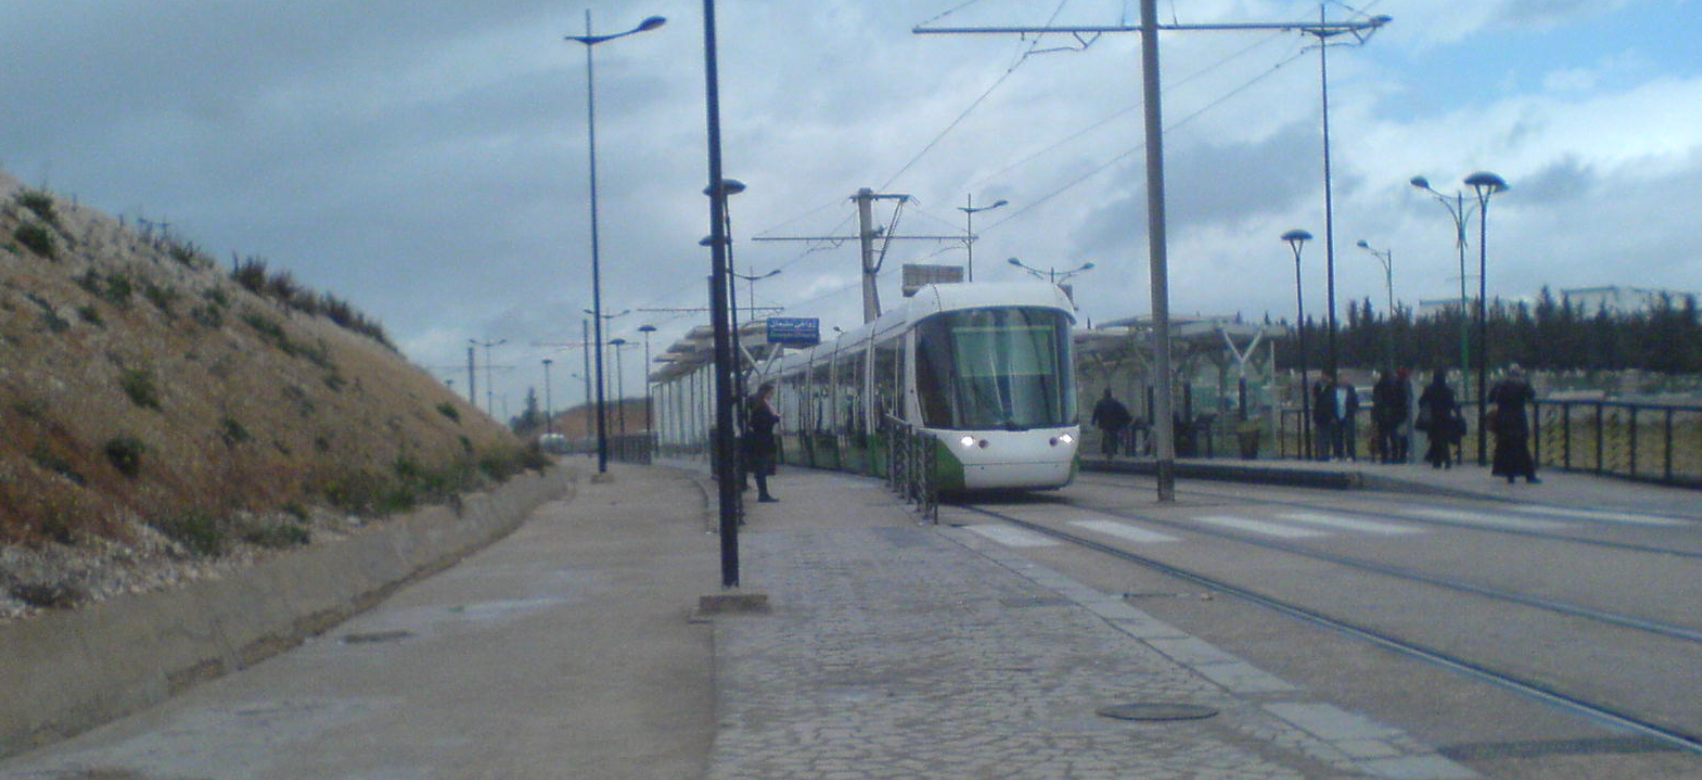 Algérie : L’extension de la ligne de tramway de Constantine officiellement inaugurée. Elle relie l’ancienne à la nouvelle ville